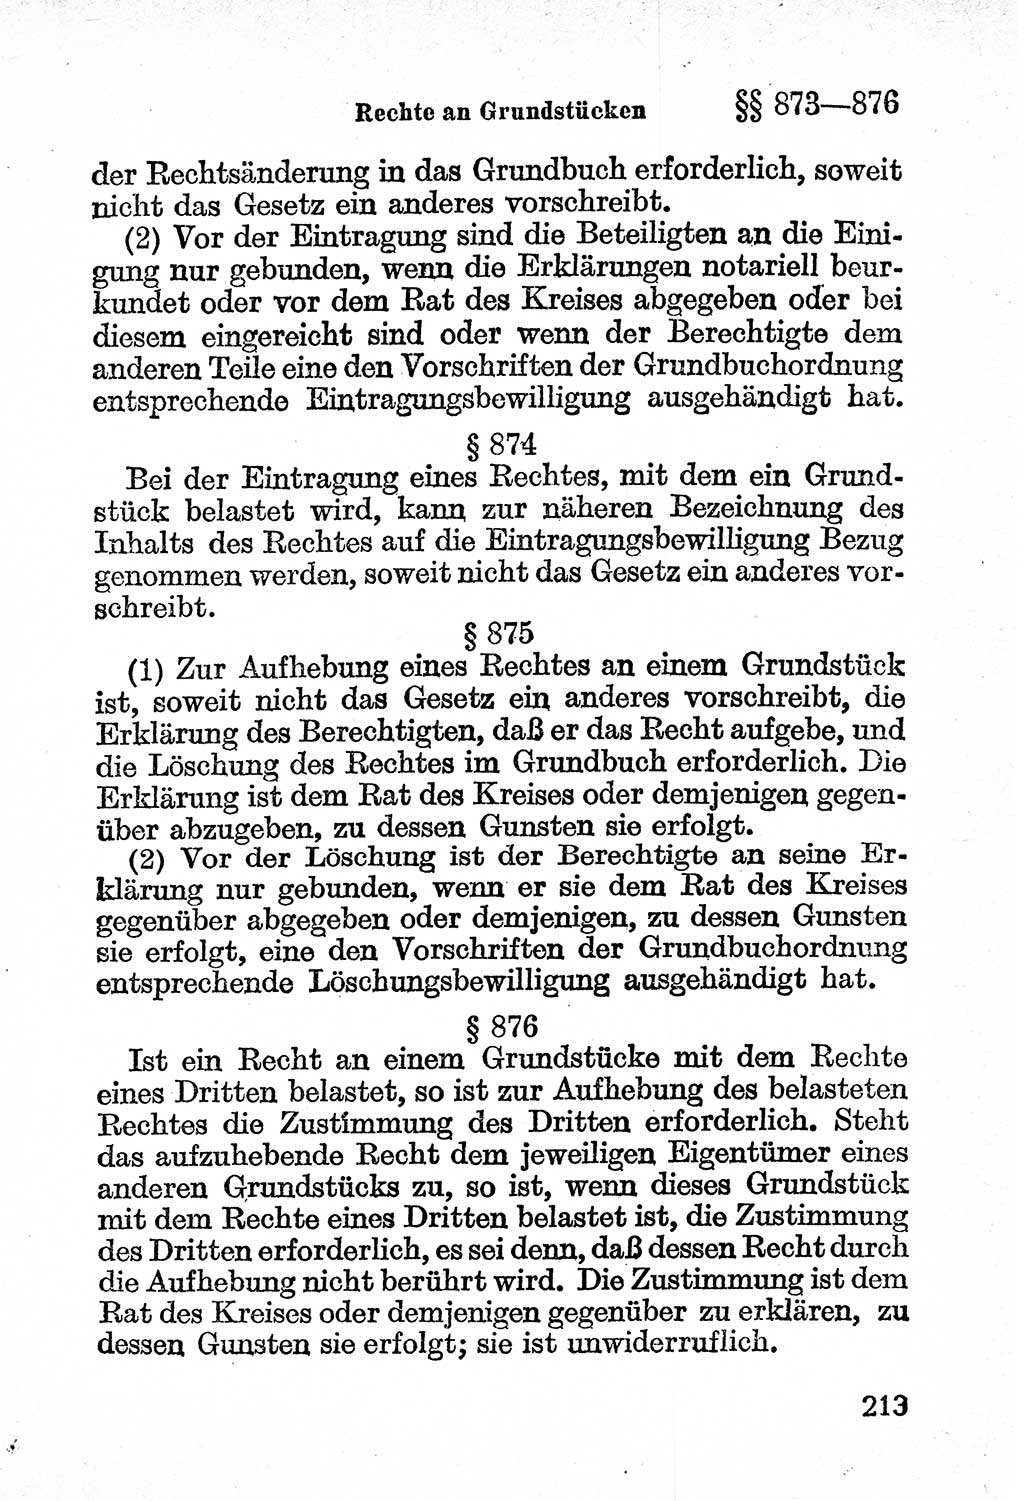 Bürgerliches Gesetzbuch (BGB) nebst wichtigen Nebengesetzen [Deutsche Demokratische Republik (DDR)] 1956, Seite 213 (BGB Nebenges. DDR 1956, S. 213)